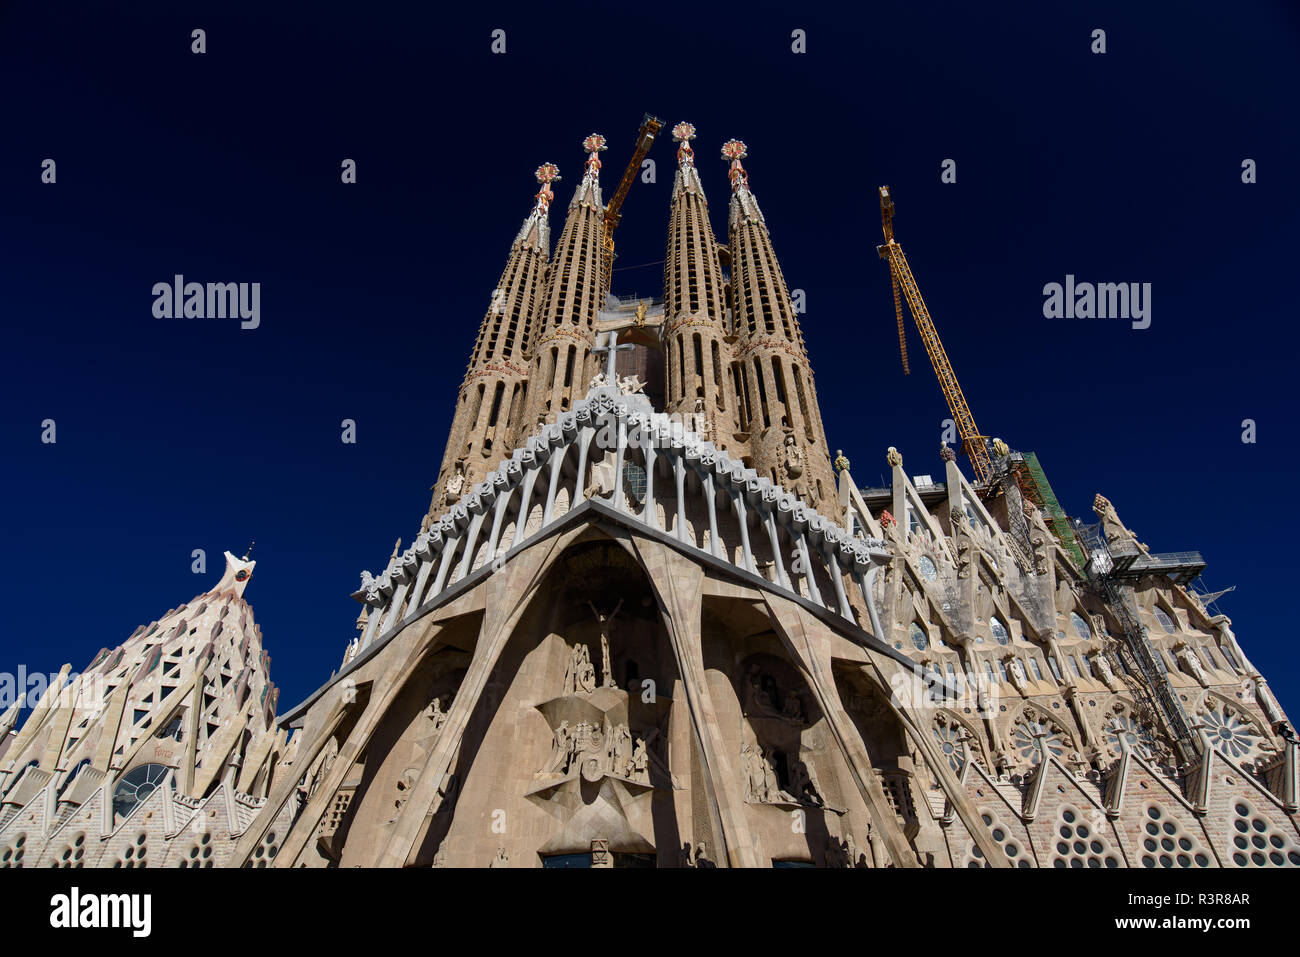 Façade de la passion de la Sagrada Familia, la cathédrale conçue par Gaudi à Barcelone, Espagne Banque D'Images